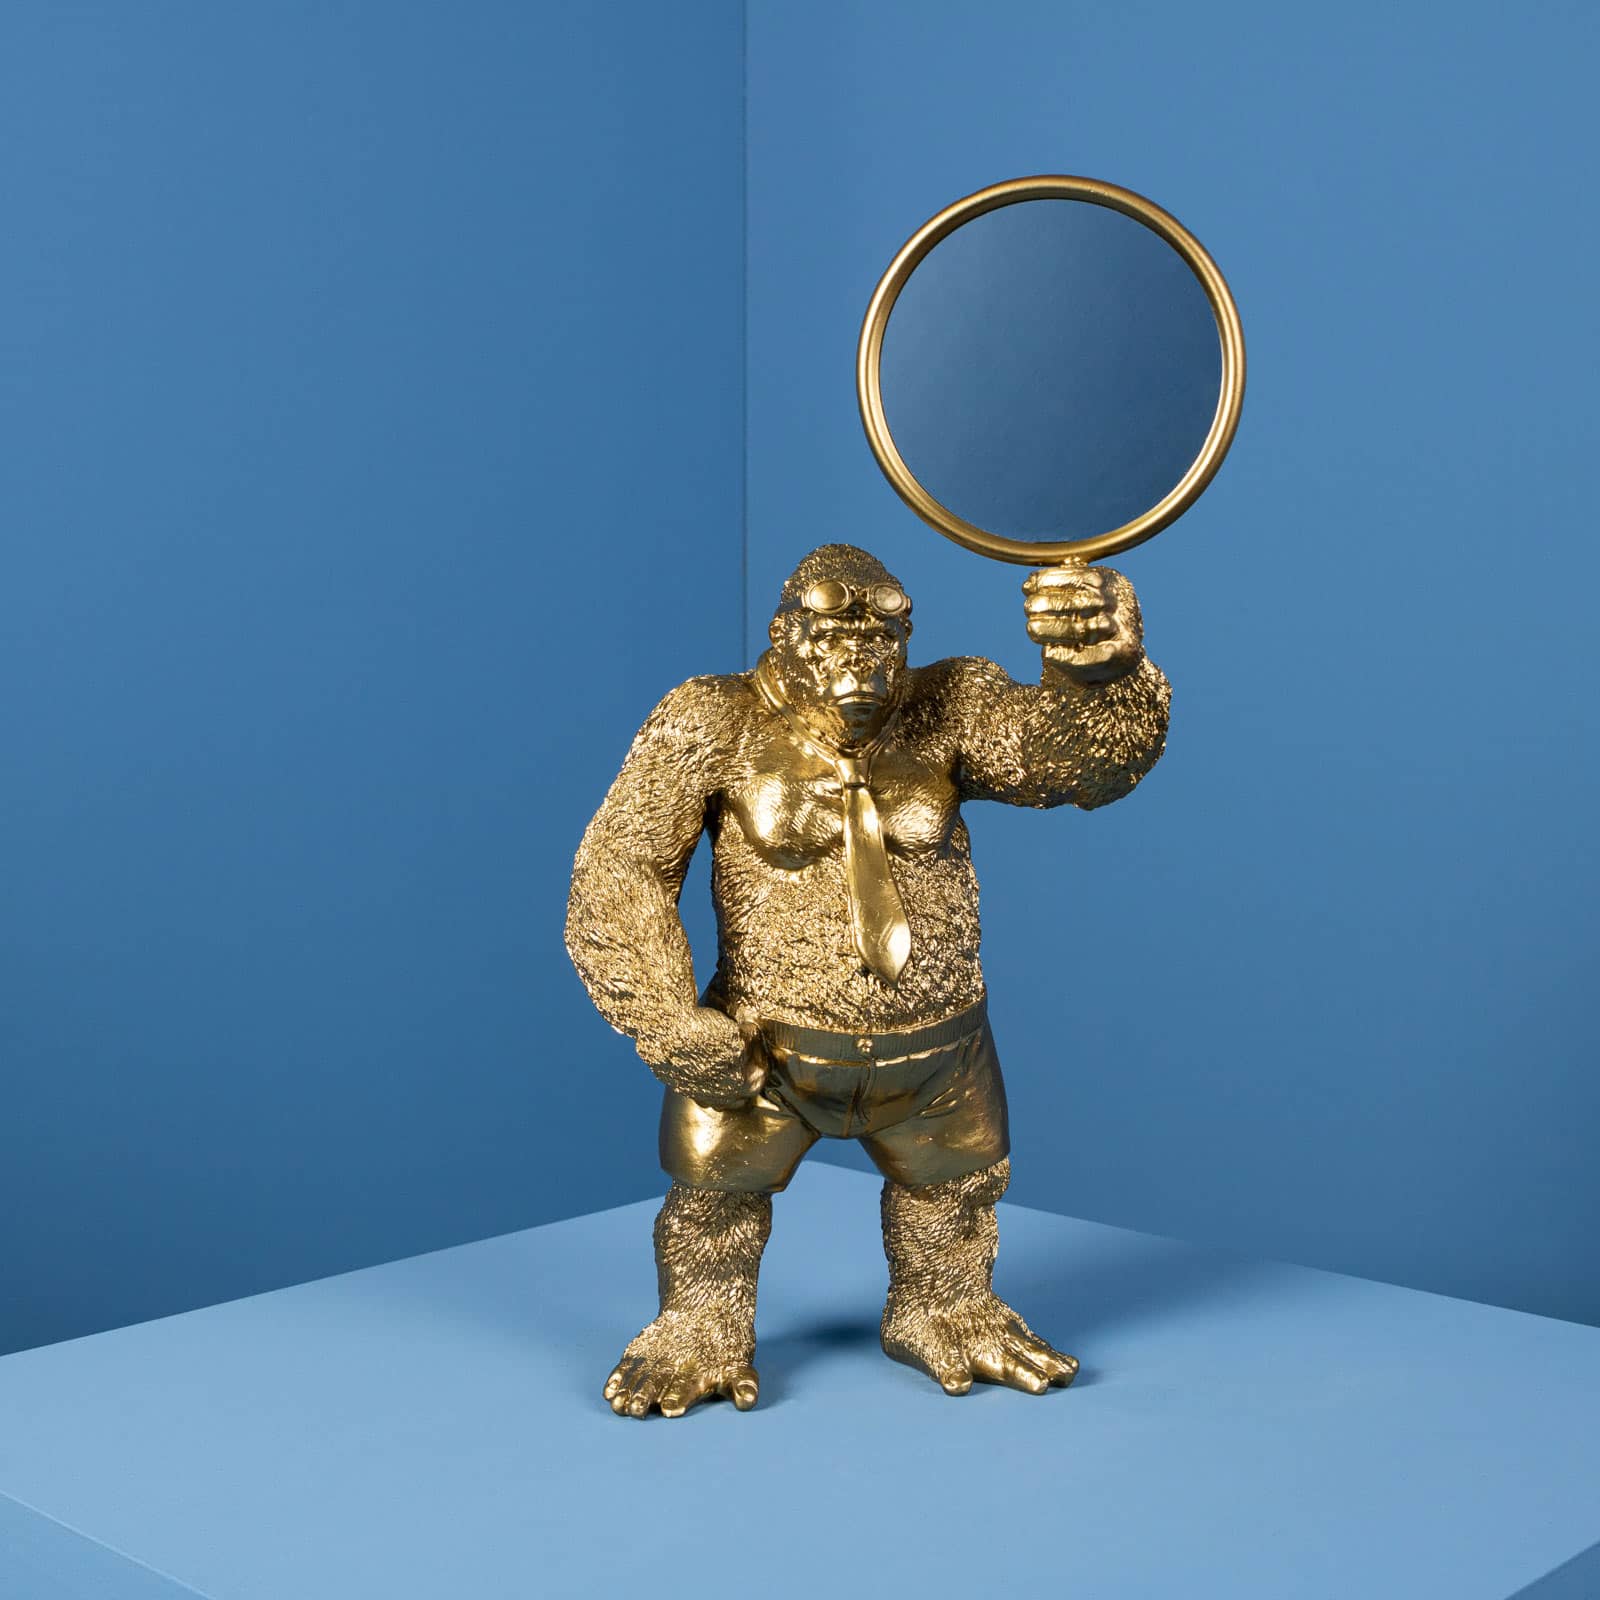 Spiegel Affe Mirror Monkey, gold